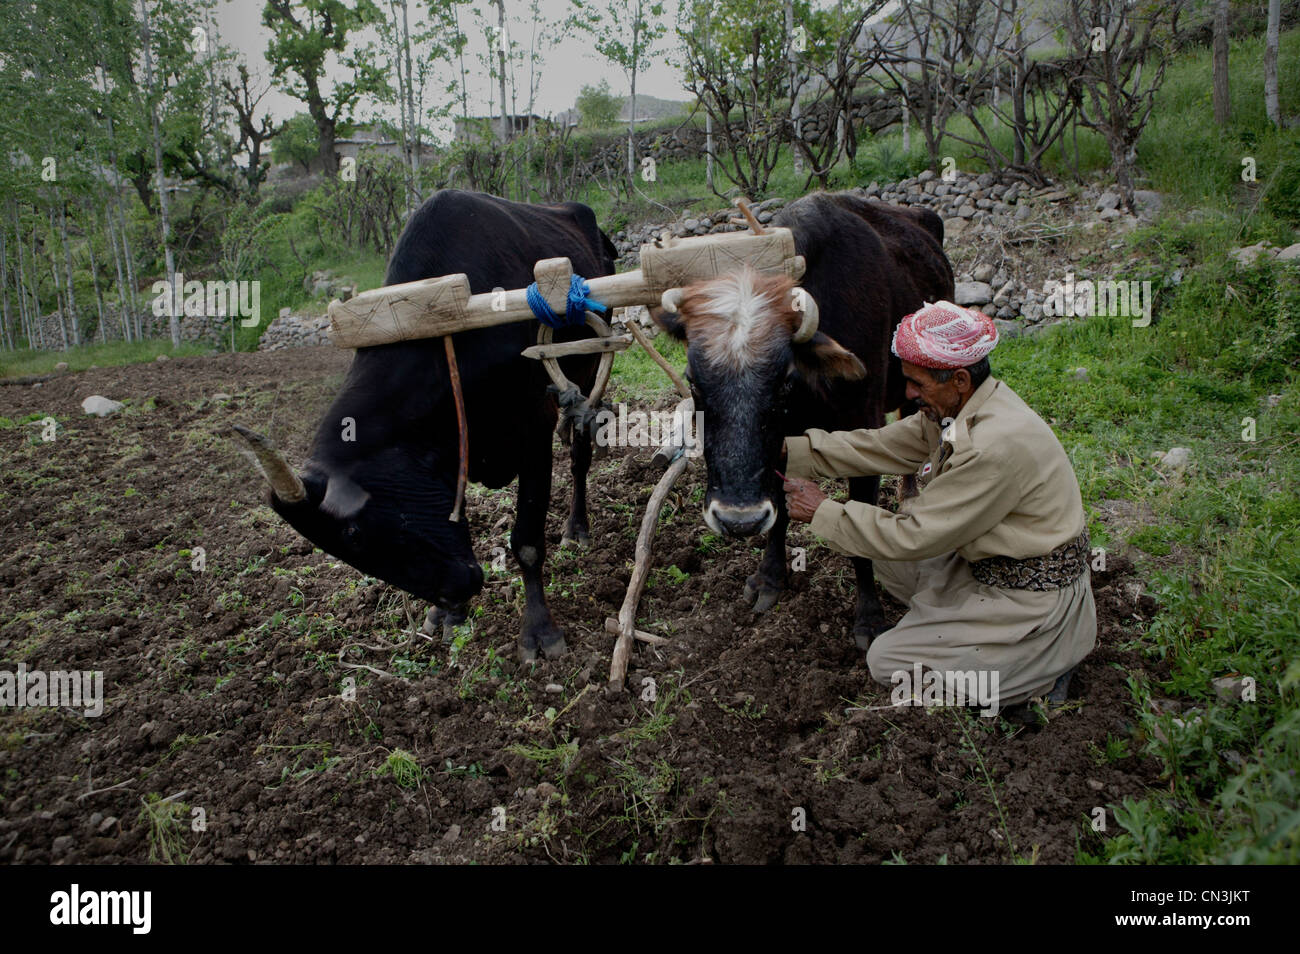 Un agricultor arando con sus bueyes en la misma manera como lo hizo su padre y su abuelo antes que él. Foto de stock